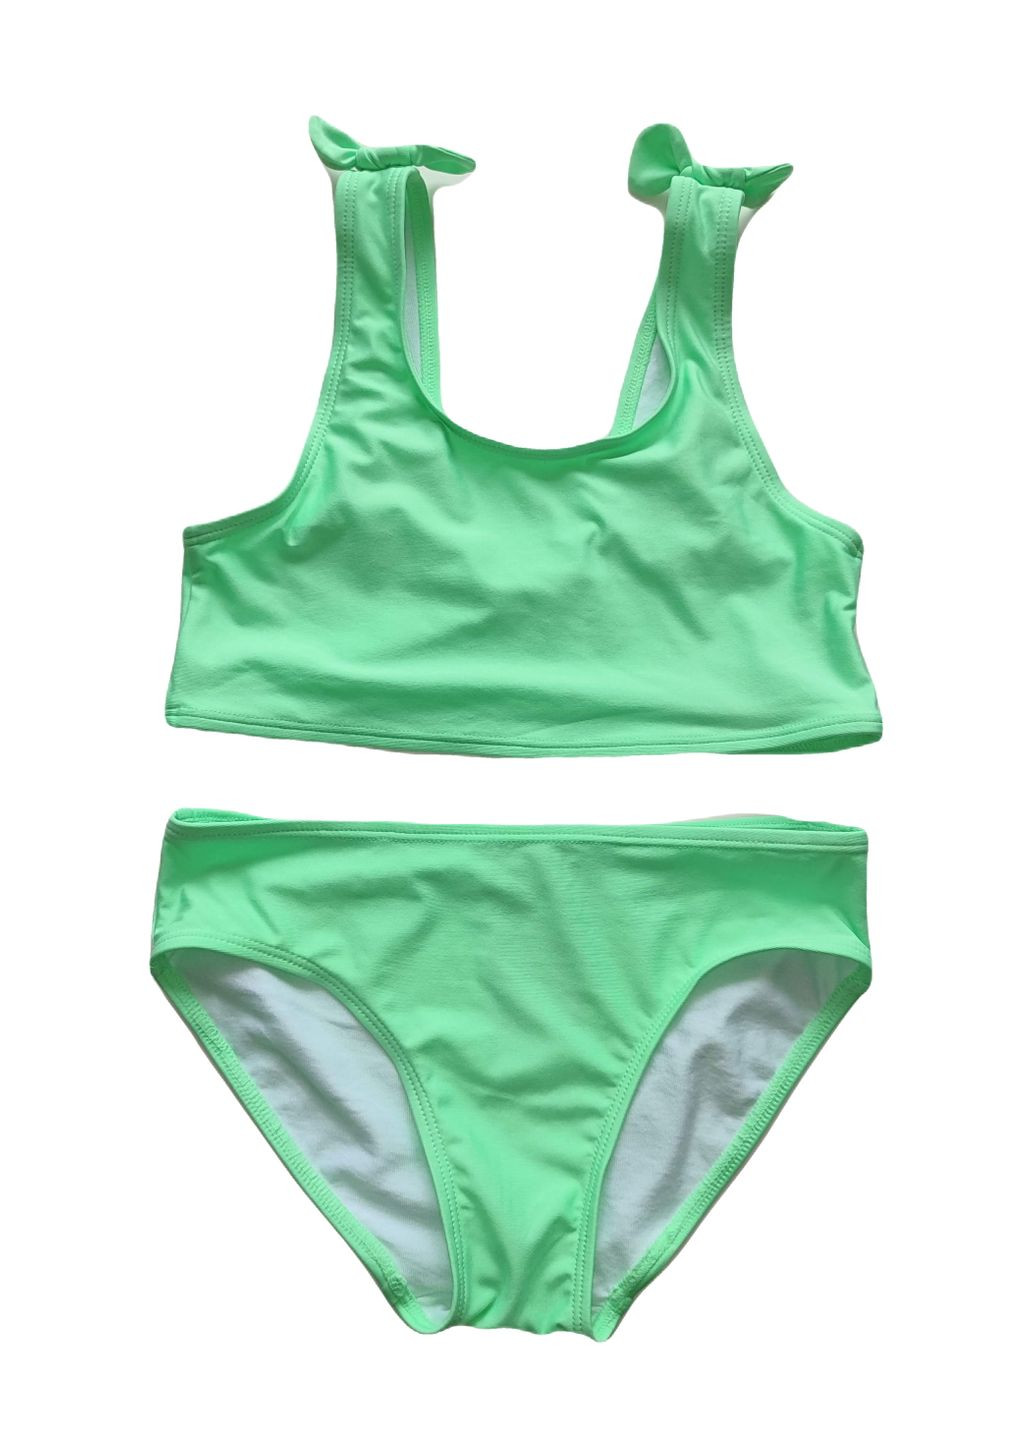 Зеленый купальник раздельный на подкладке для девочки 1046528-004 H&M